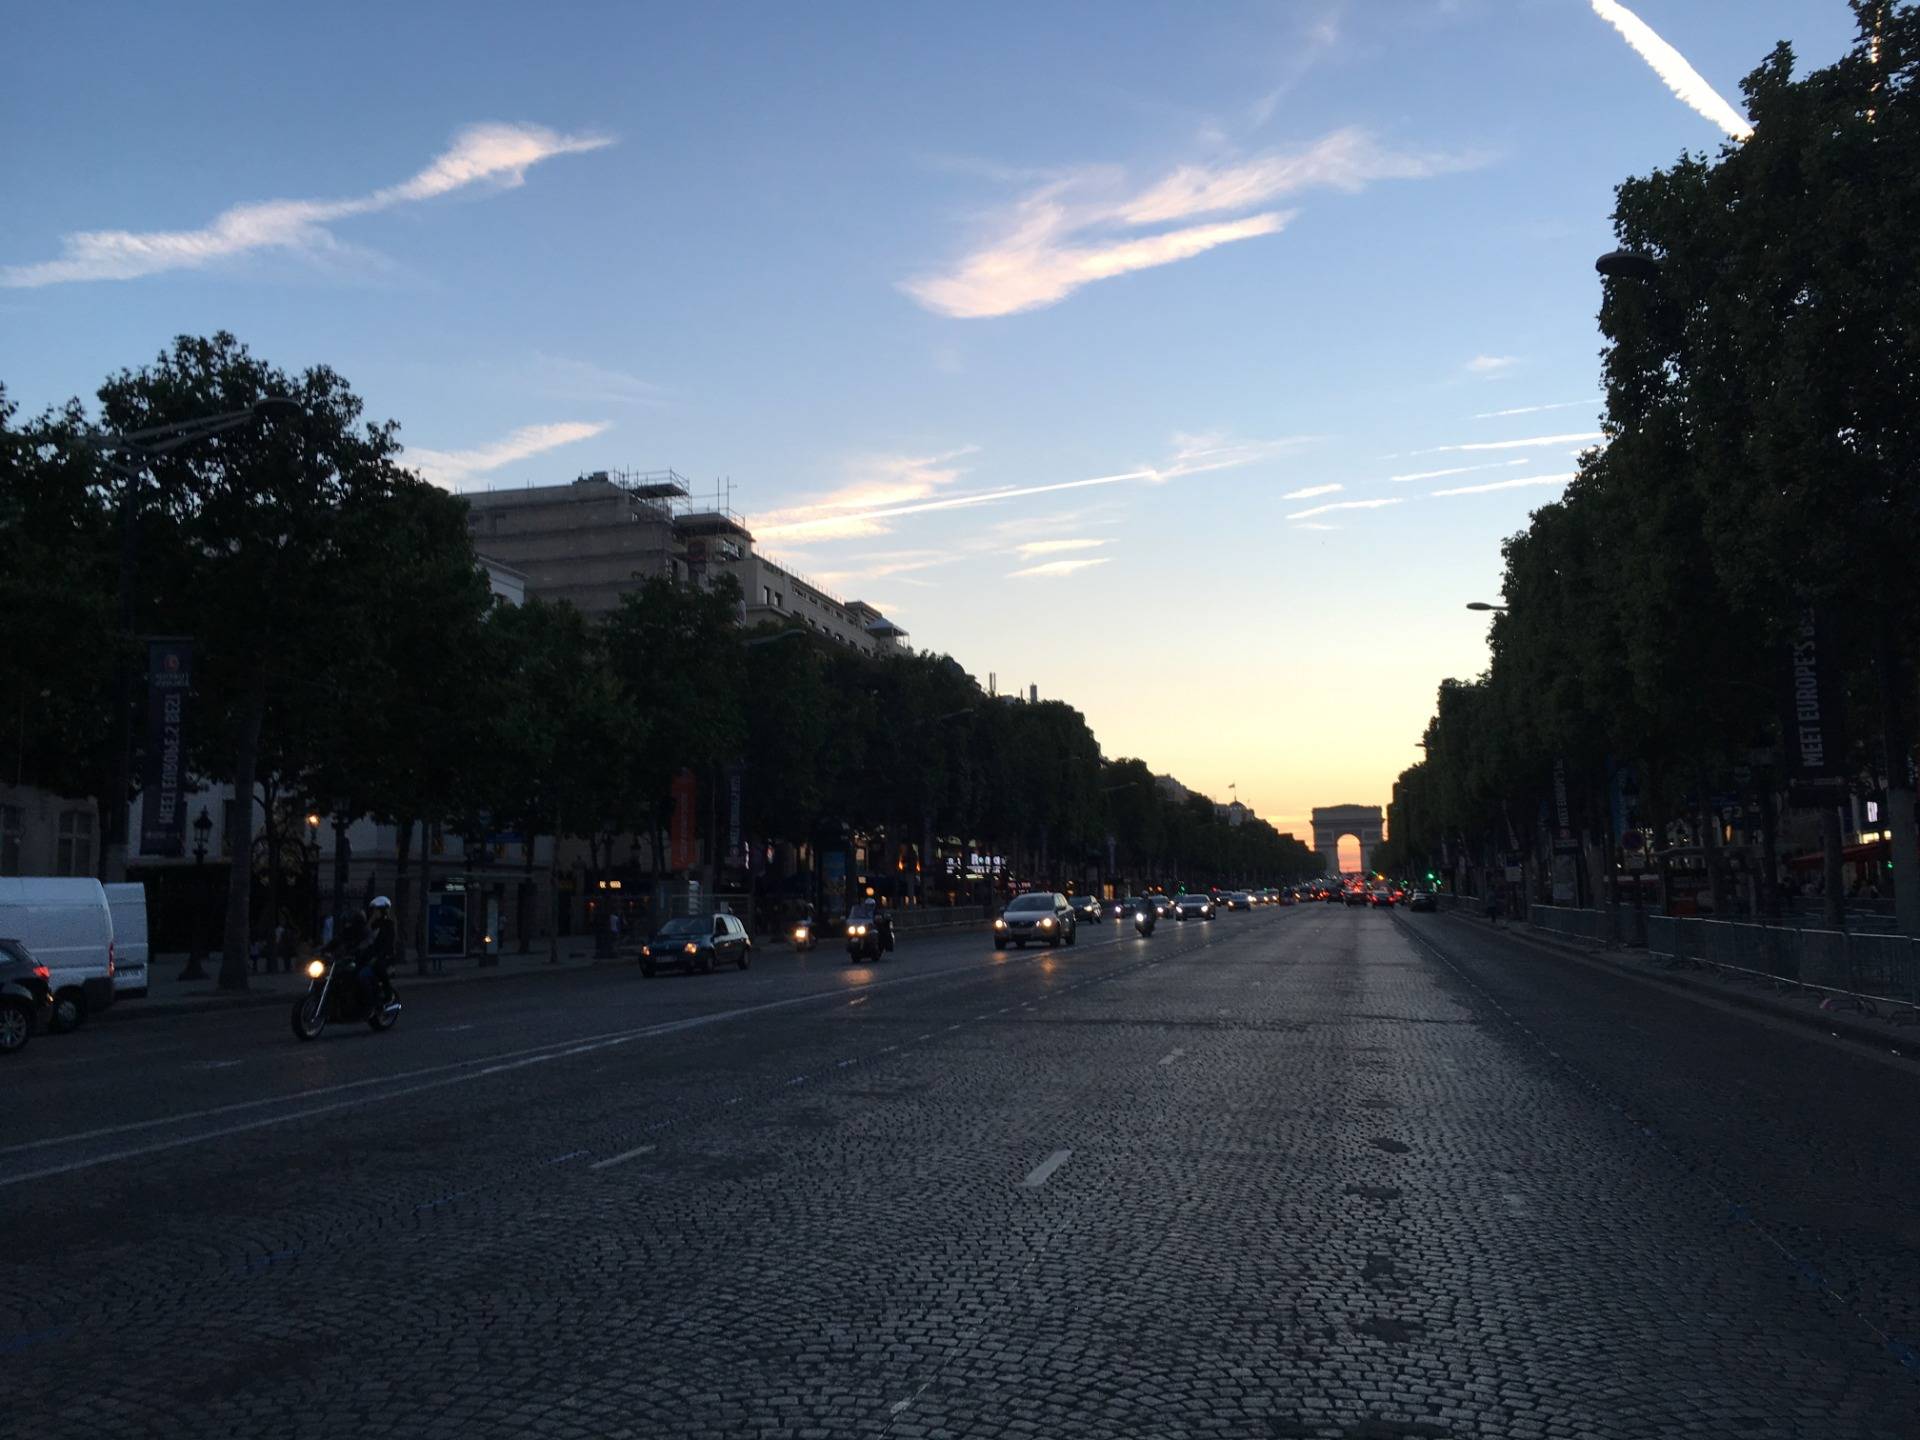 Avenue des Champs-Élysées towards Place Charles de Gaulle